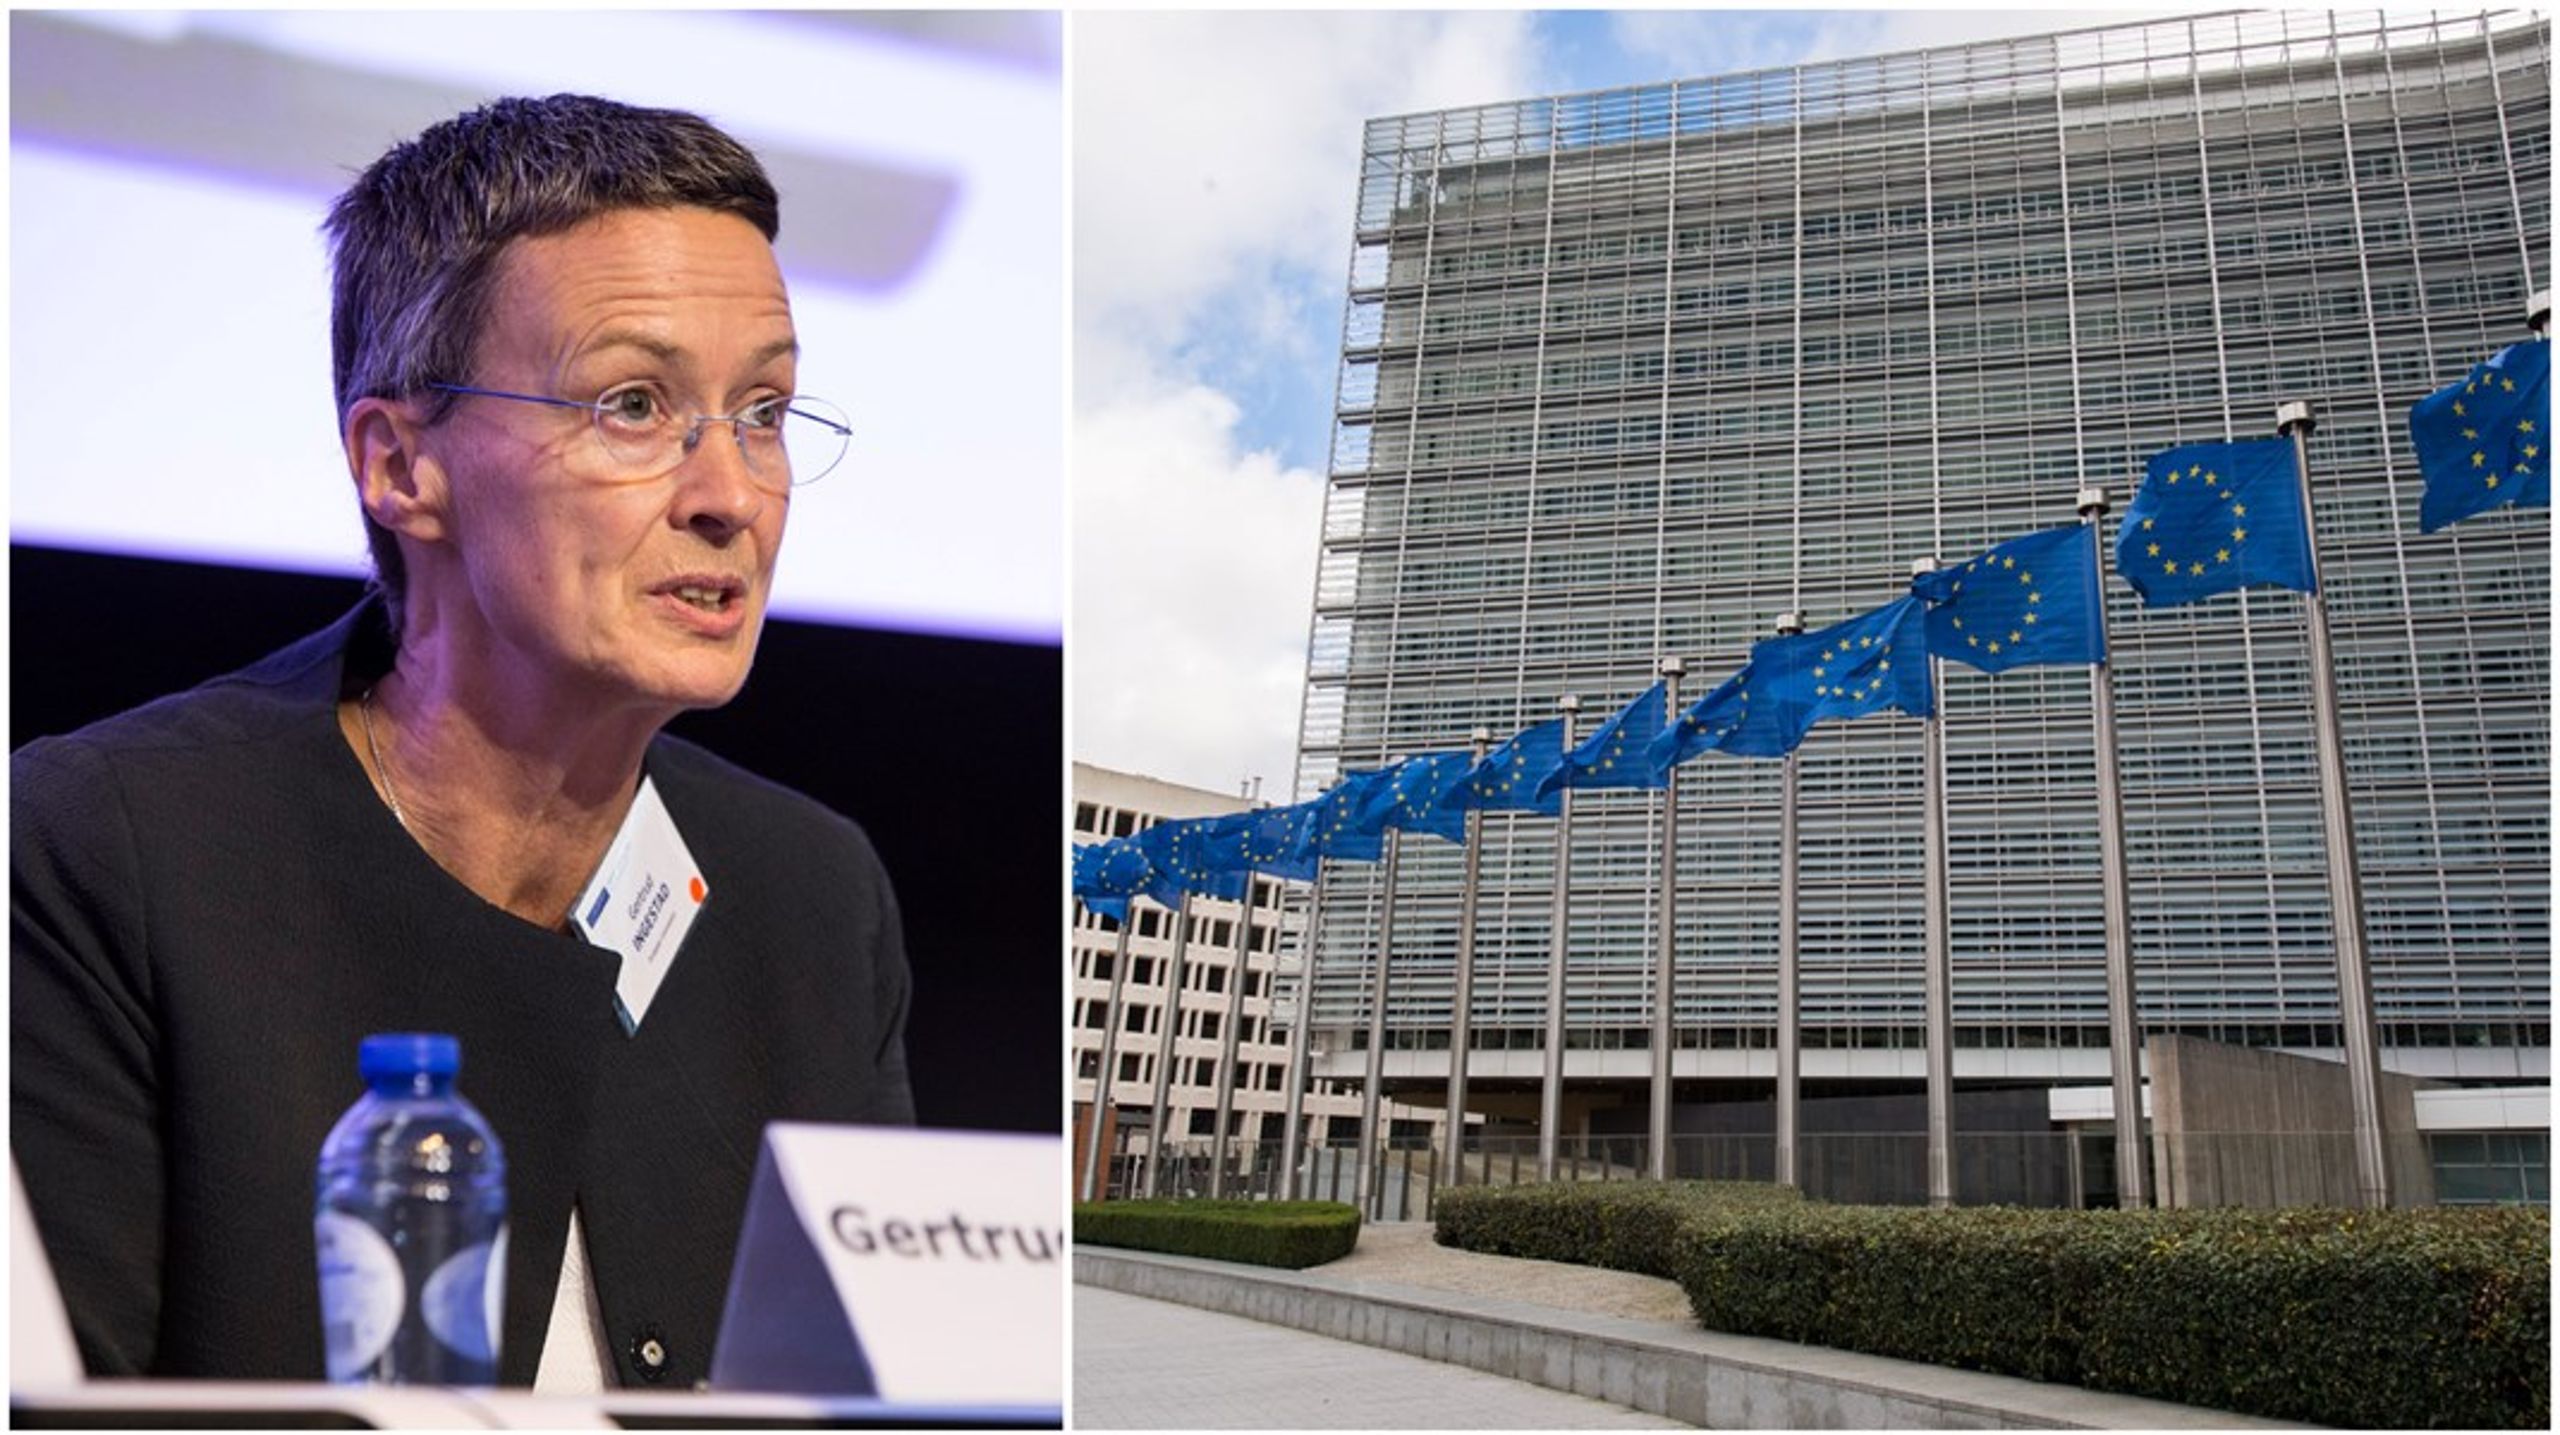 Gertrud Ingestad leder i dag över 1 000 EU-anställda på sitt generaldirektorat.